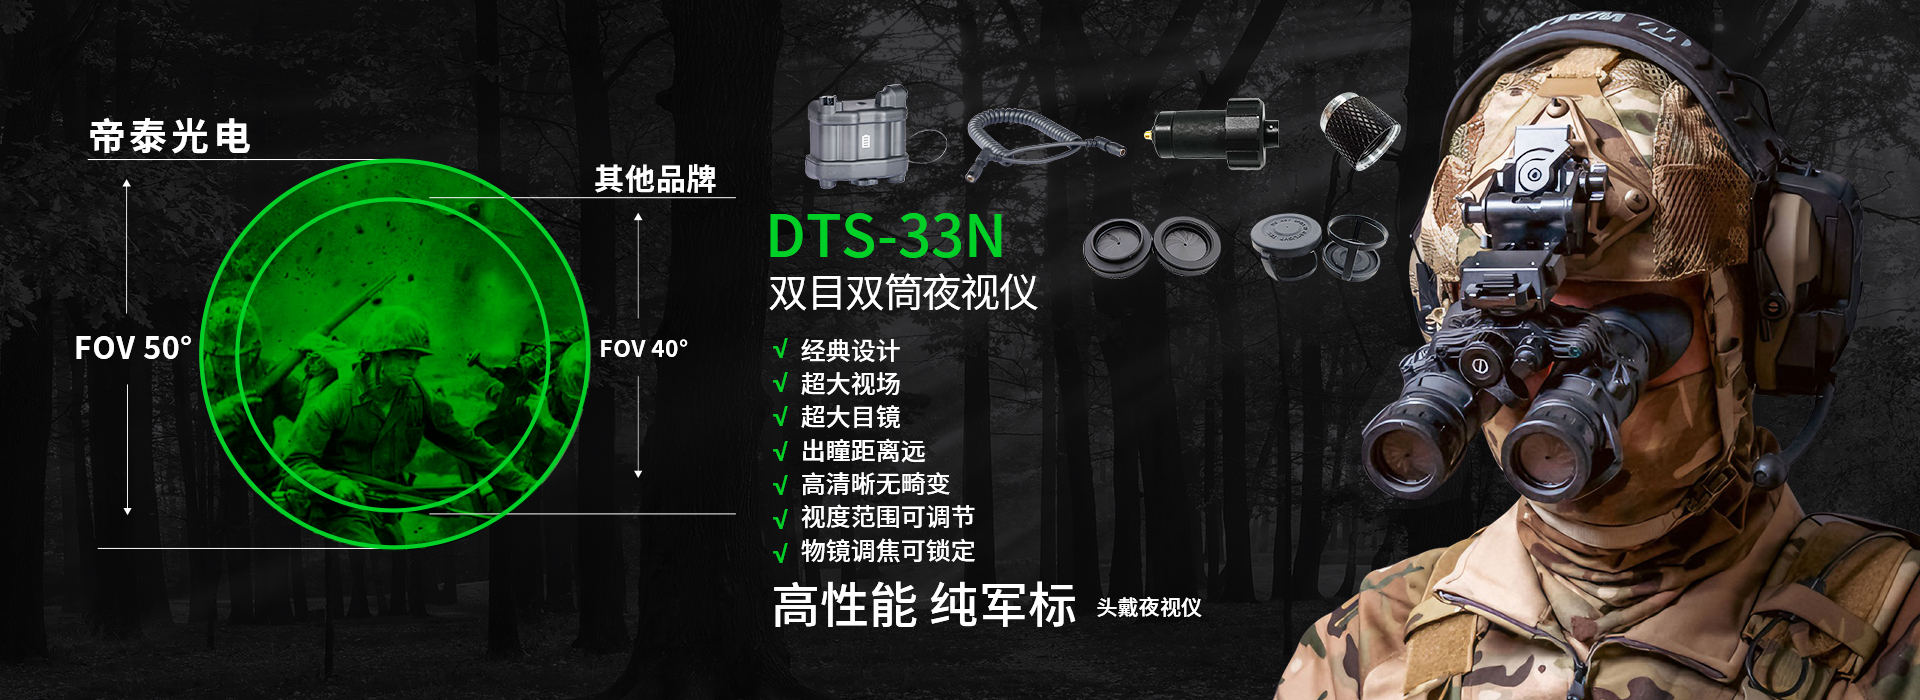 DTS-33N-(2)